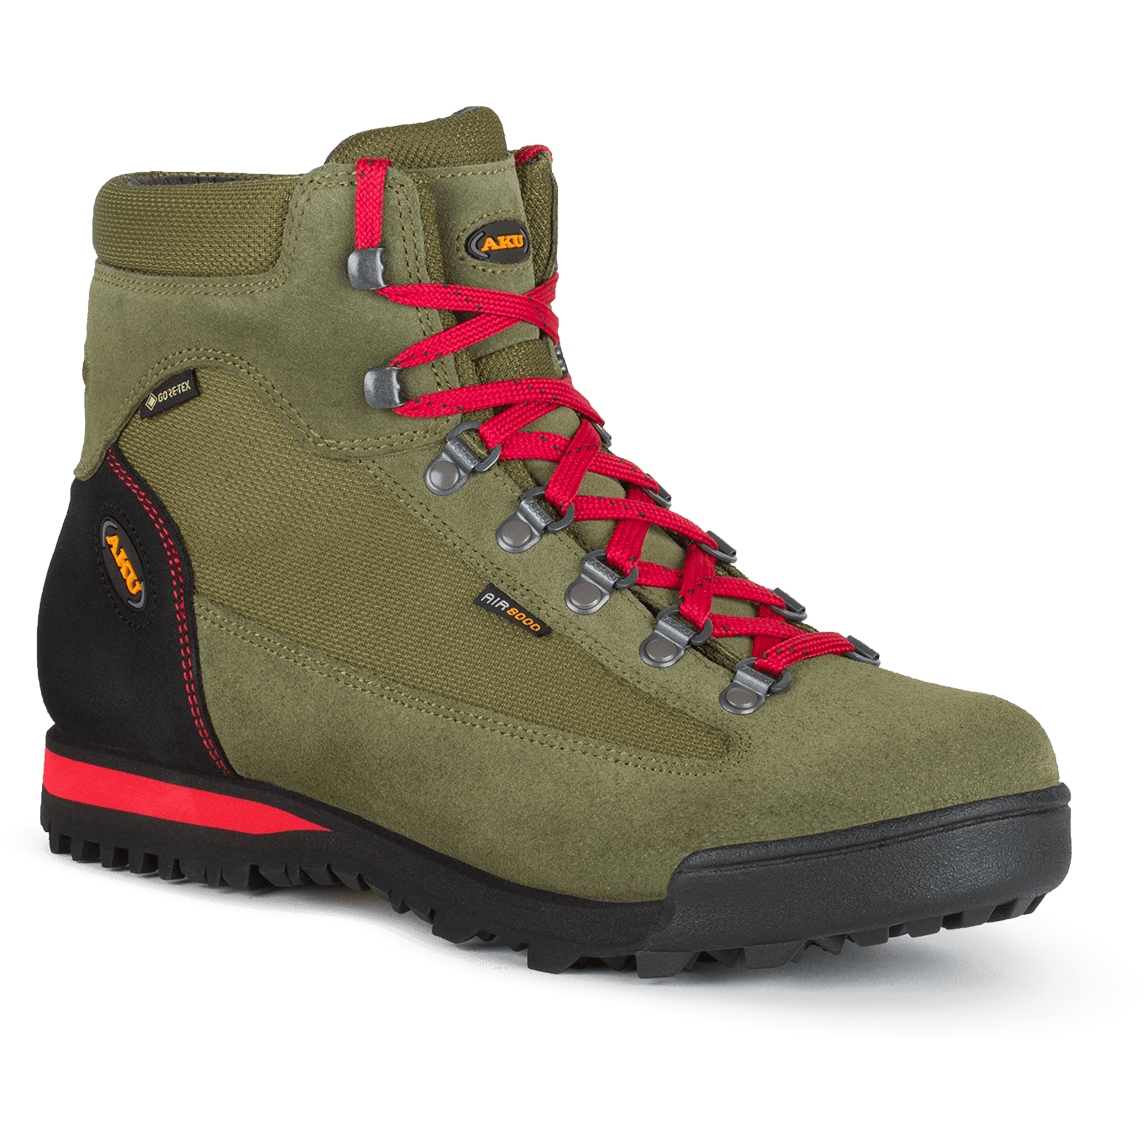 Produktbild von AKU Slope GTX Schuhe - Military Green/Red